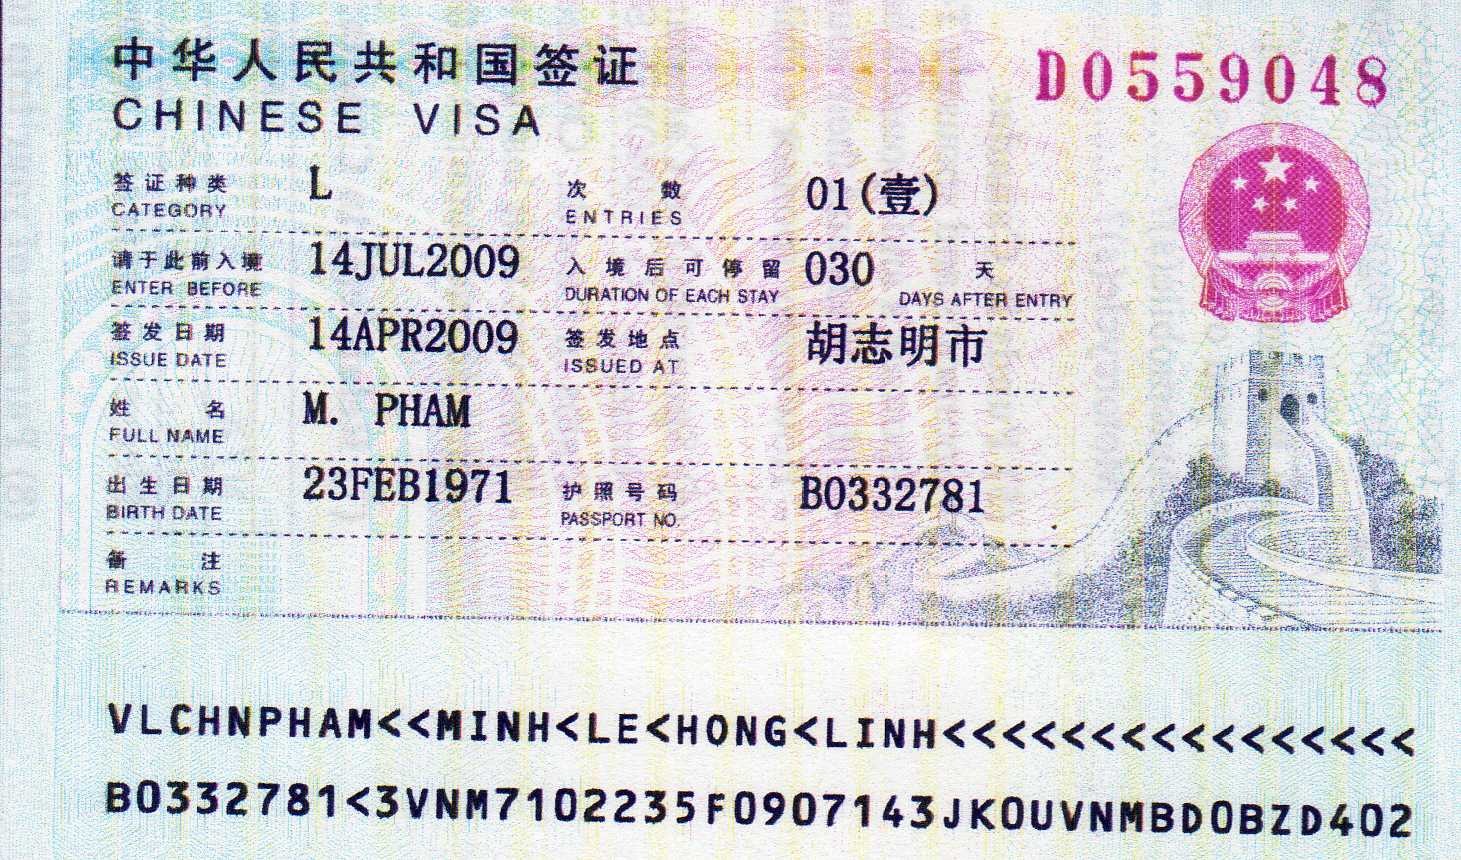 Types of visa